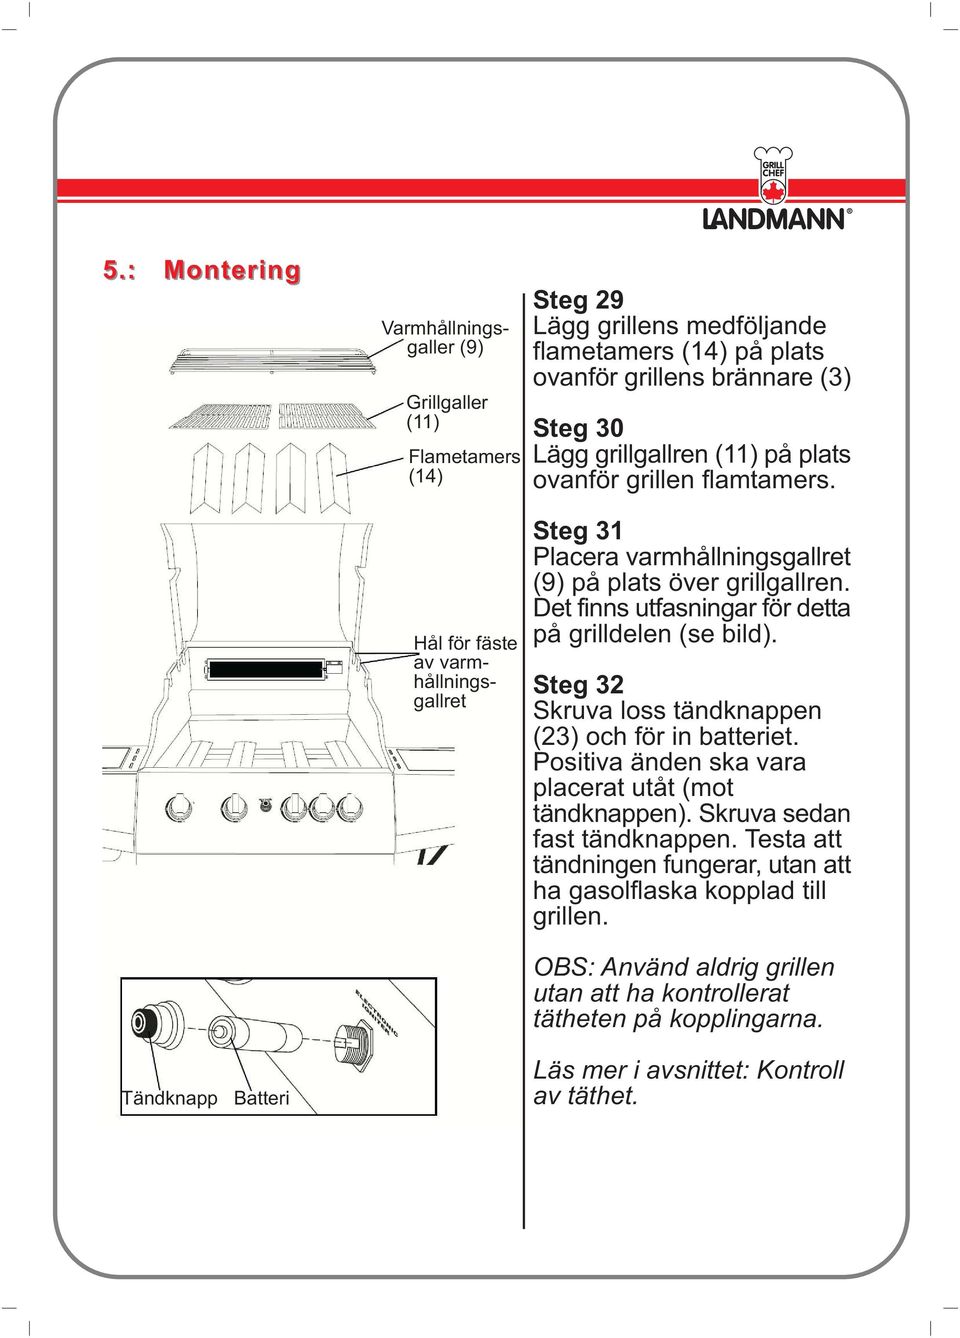 Det finns utfasningar för detta på grilldelen (se bild). Steg 32 Skruva loss tändknappen (23) och för in batteriet. Positiva änden ska vara placerat utåt (mot tändknappen).